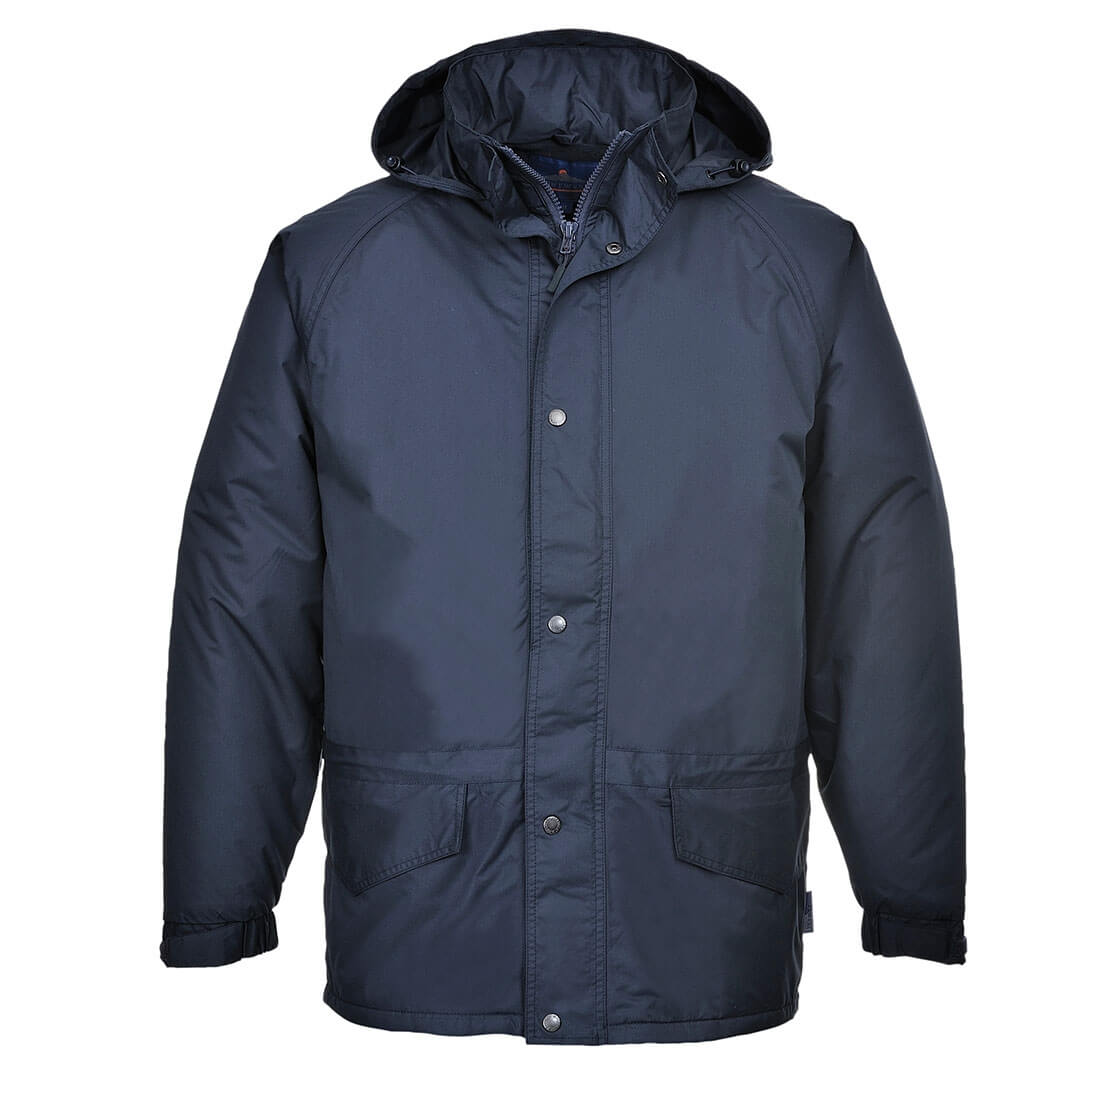 Arbroath Breathable Fleece Lined Jacket - Safetywear